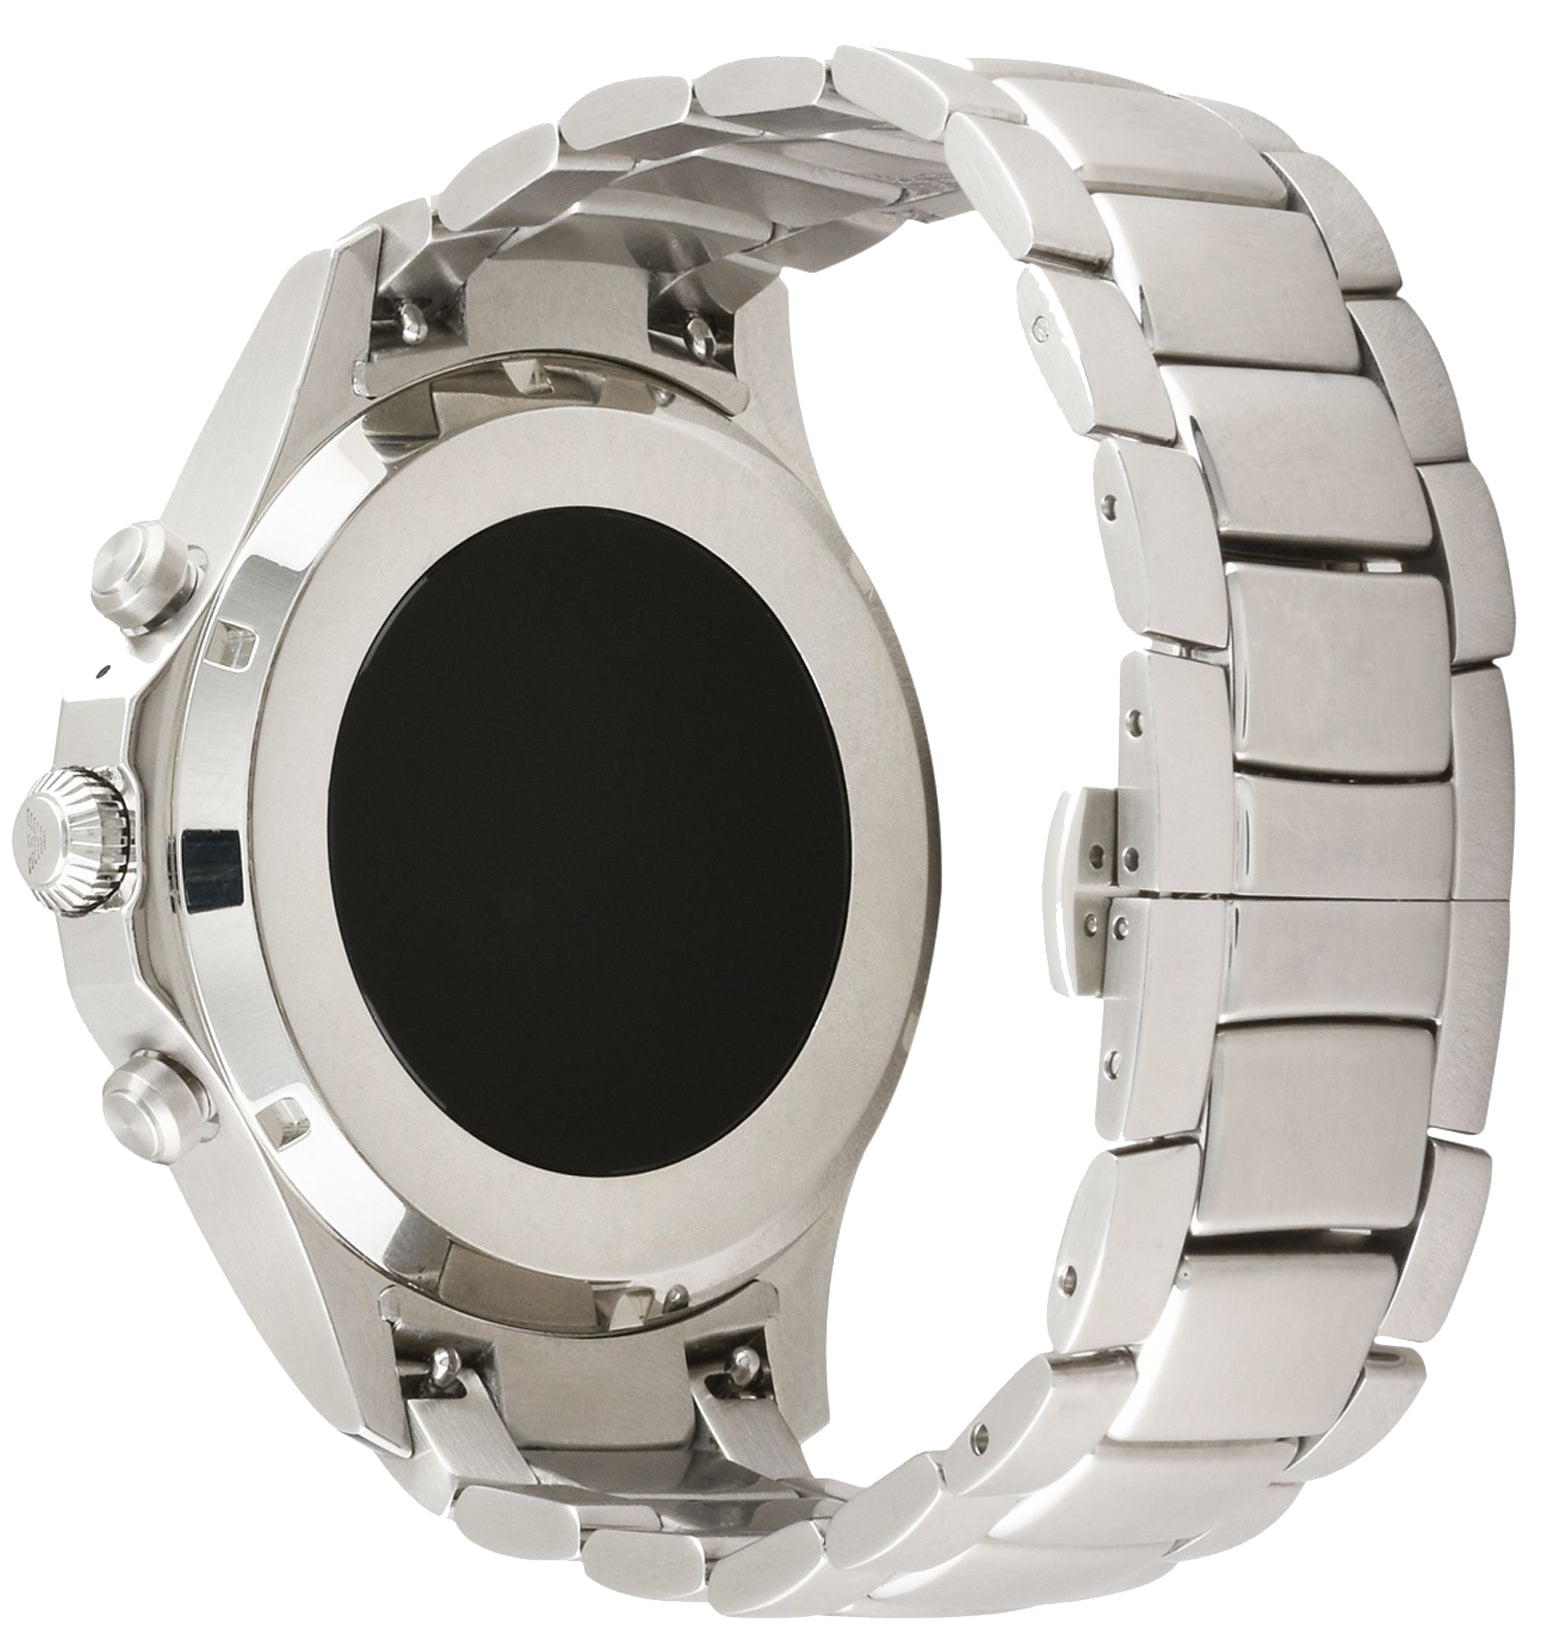 art5000 armani watch